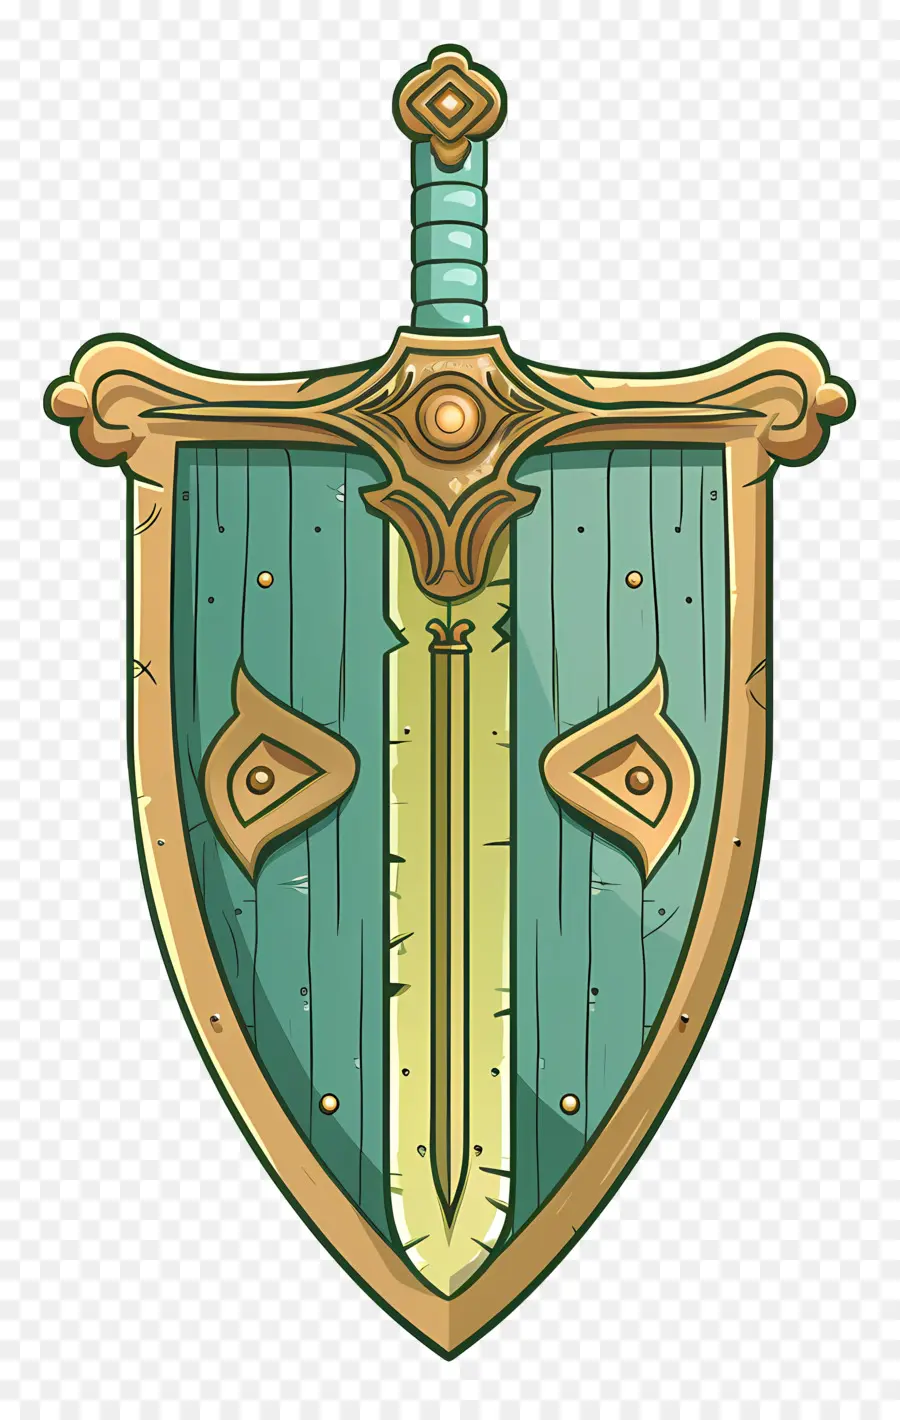 SCHIED SPARD SCHIED SPARDI GUARRIO MEDIEVALE - Shield del cavaliere medievale con spade incrociate